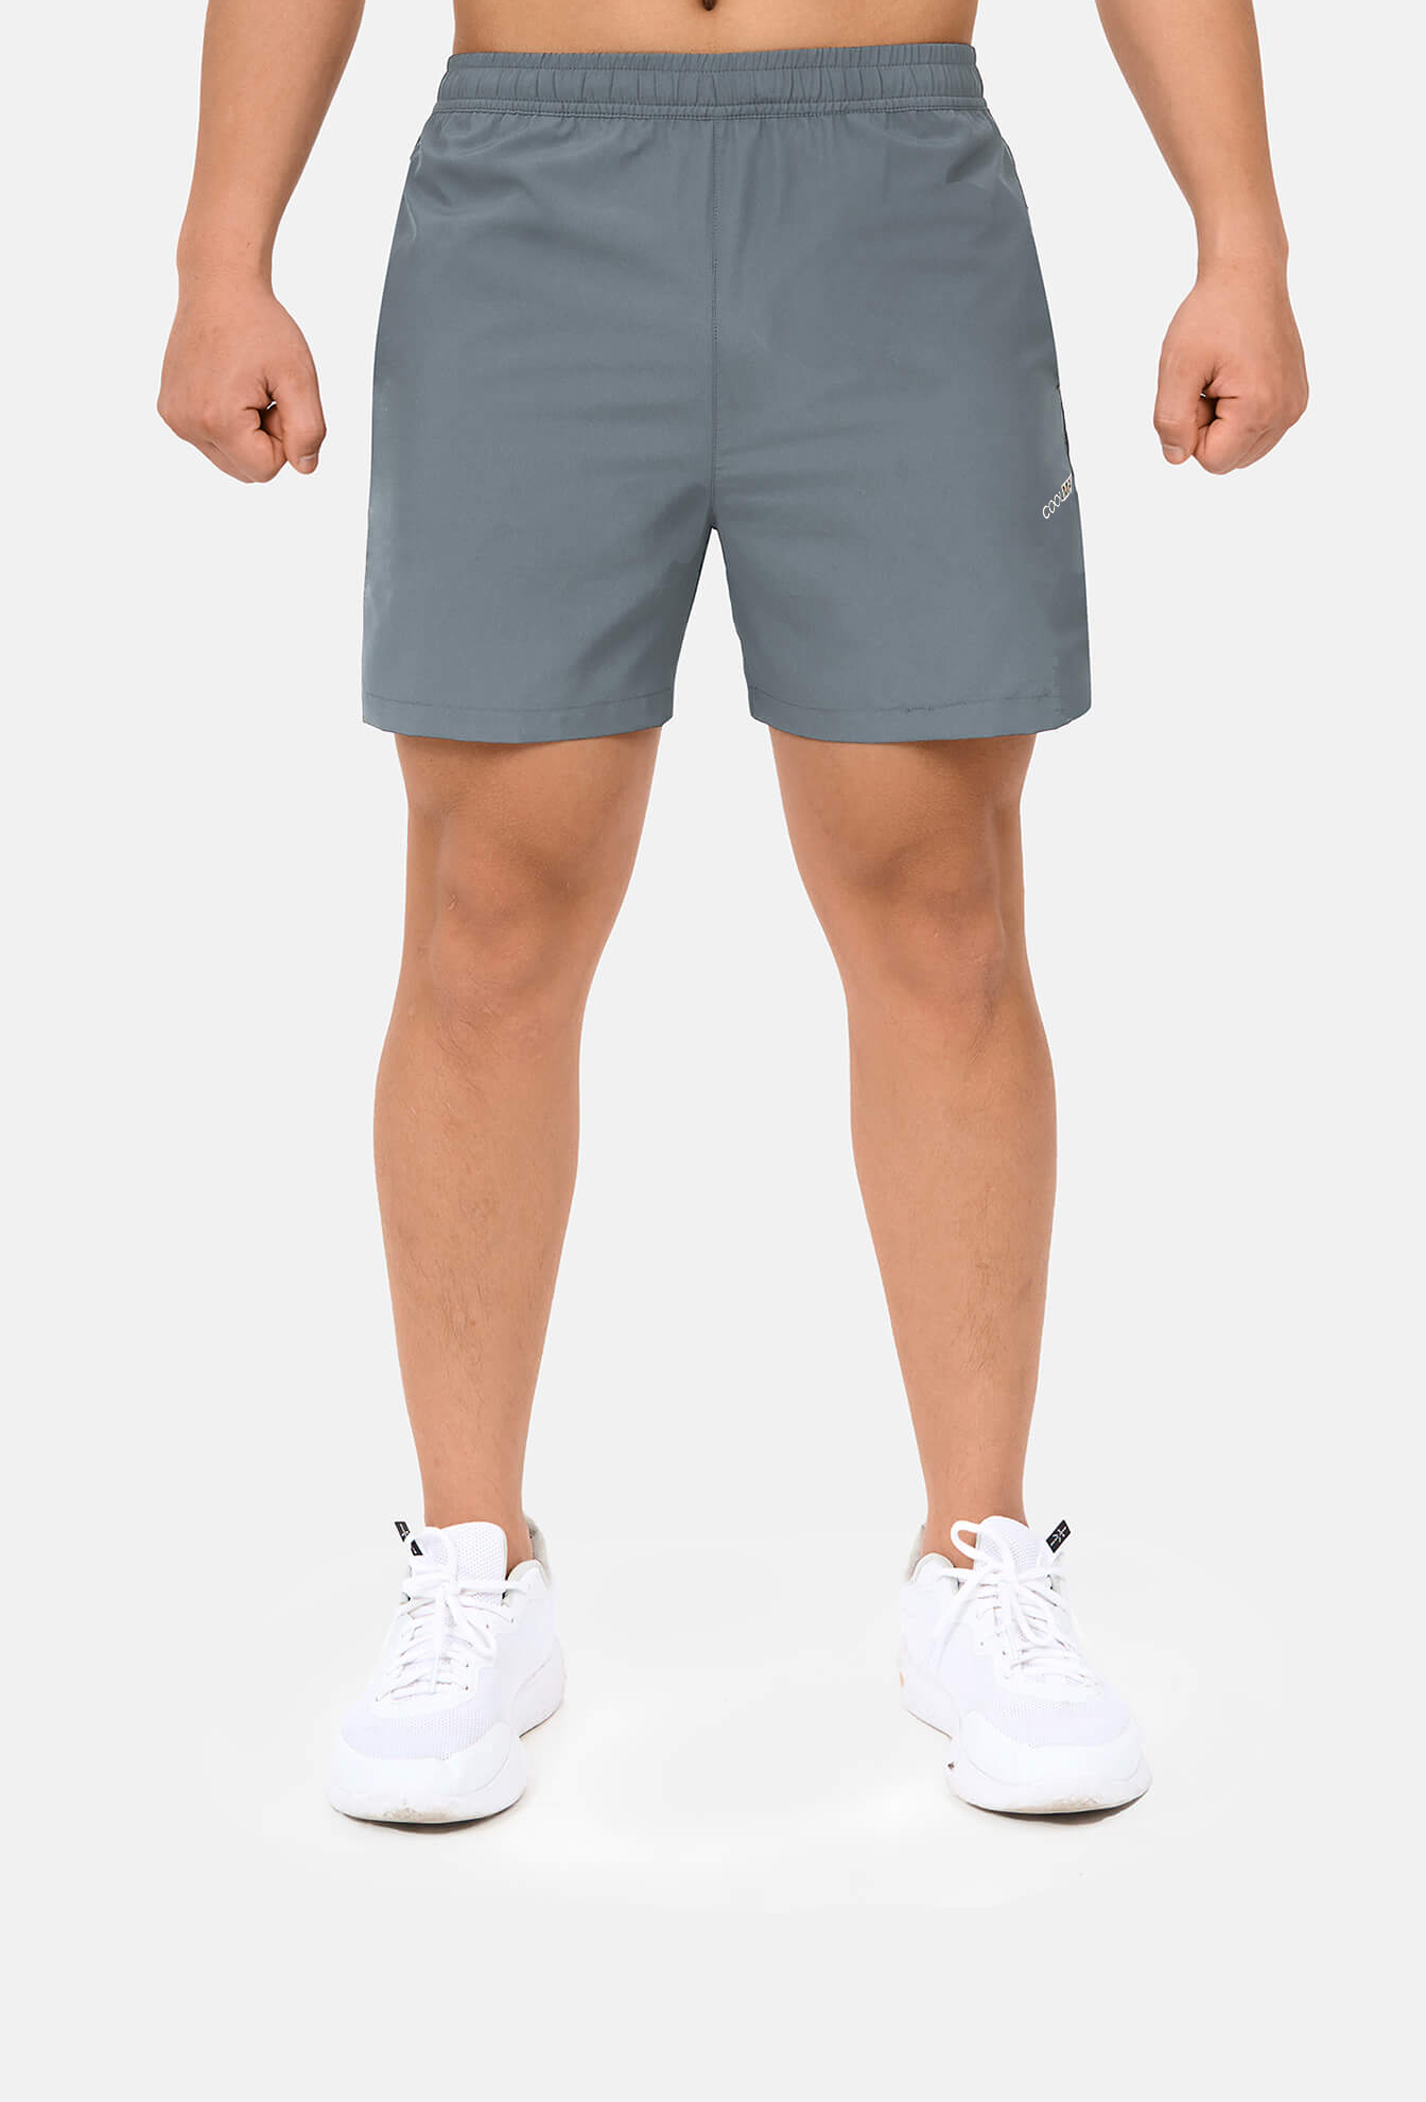 SĂN DEAL - Quần shorts nam thể thao 5" xẻ gấu cao (túi sau có khóa kéo) Xám xanh